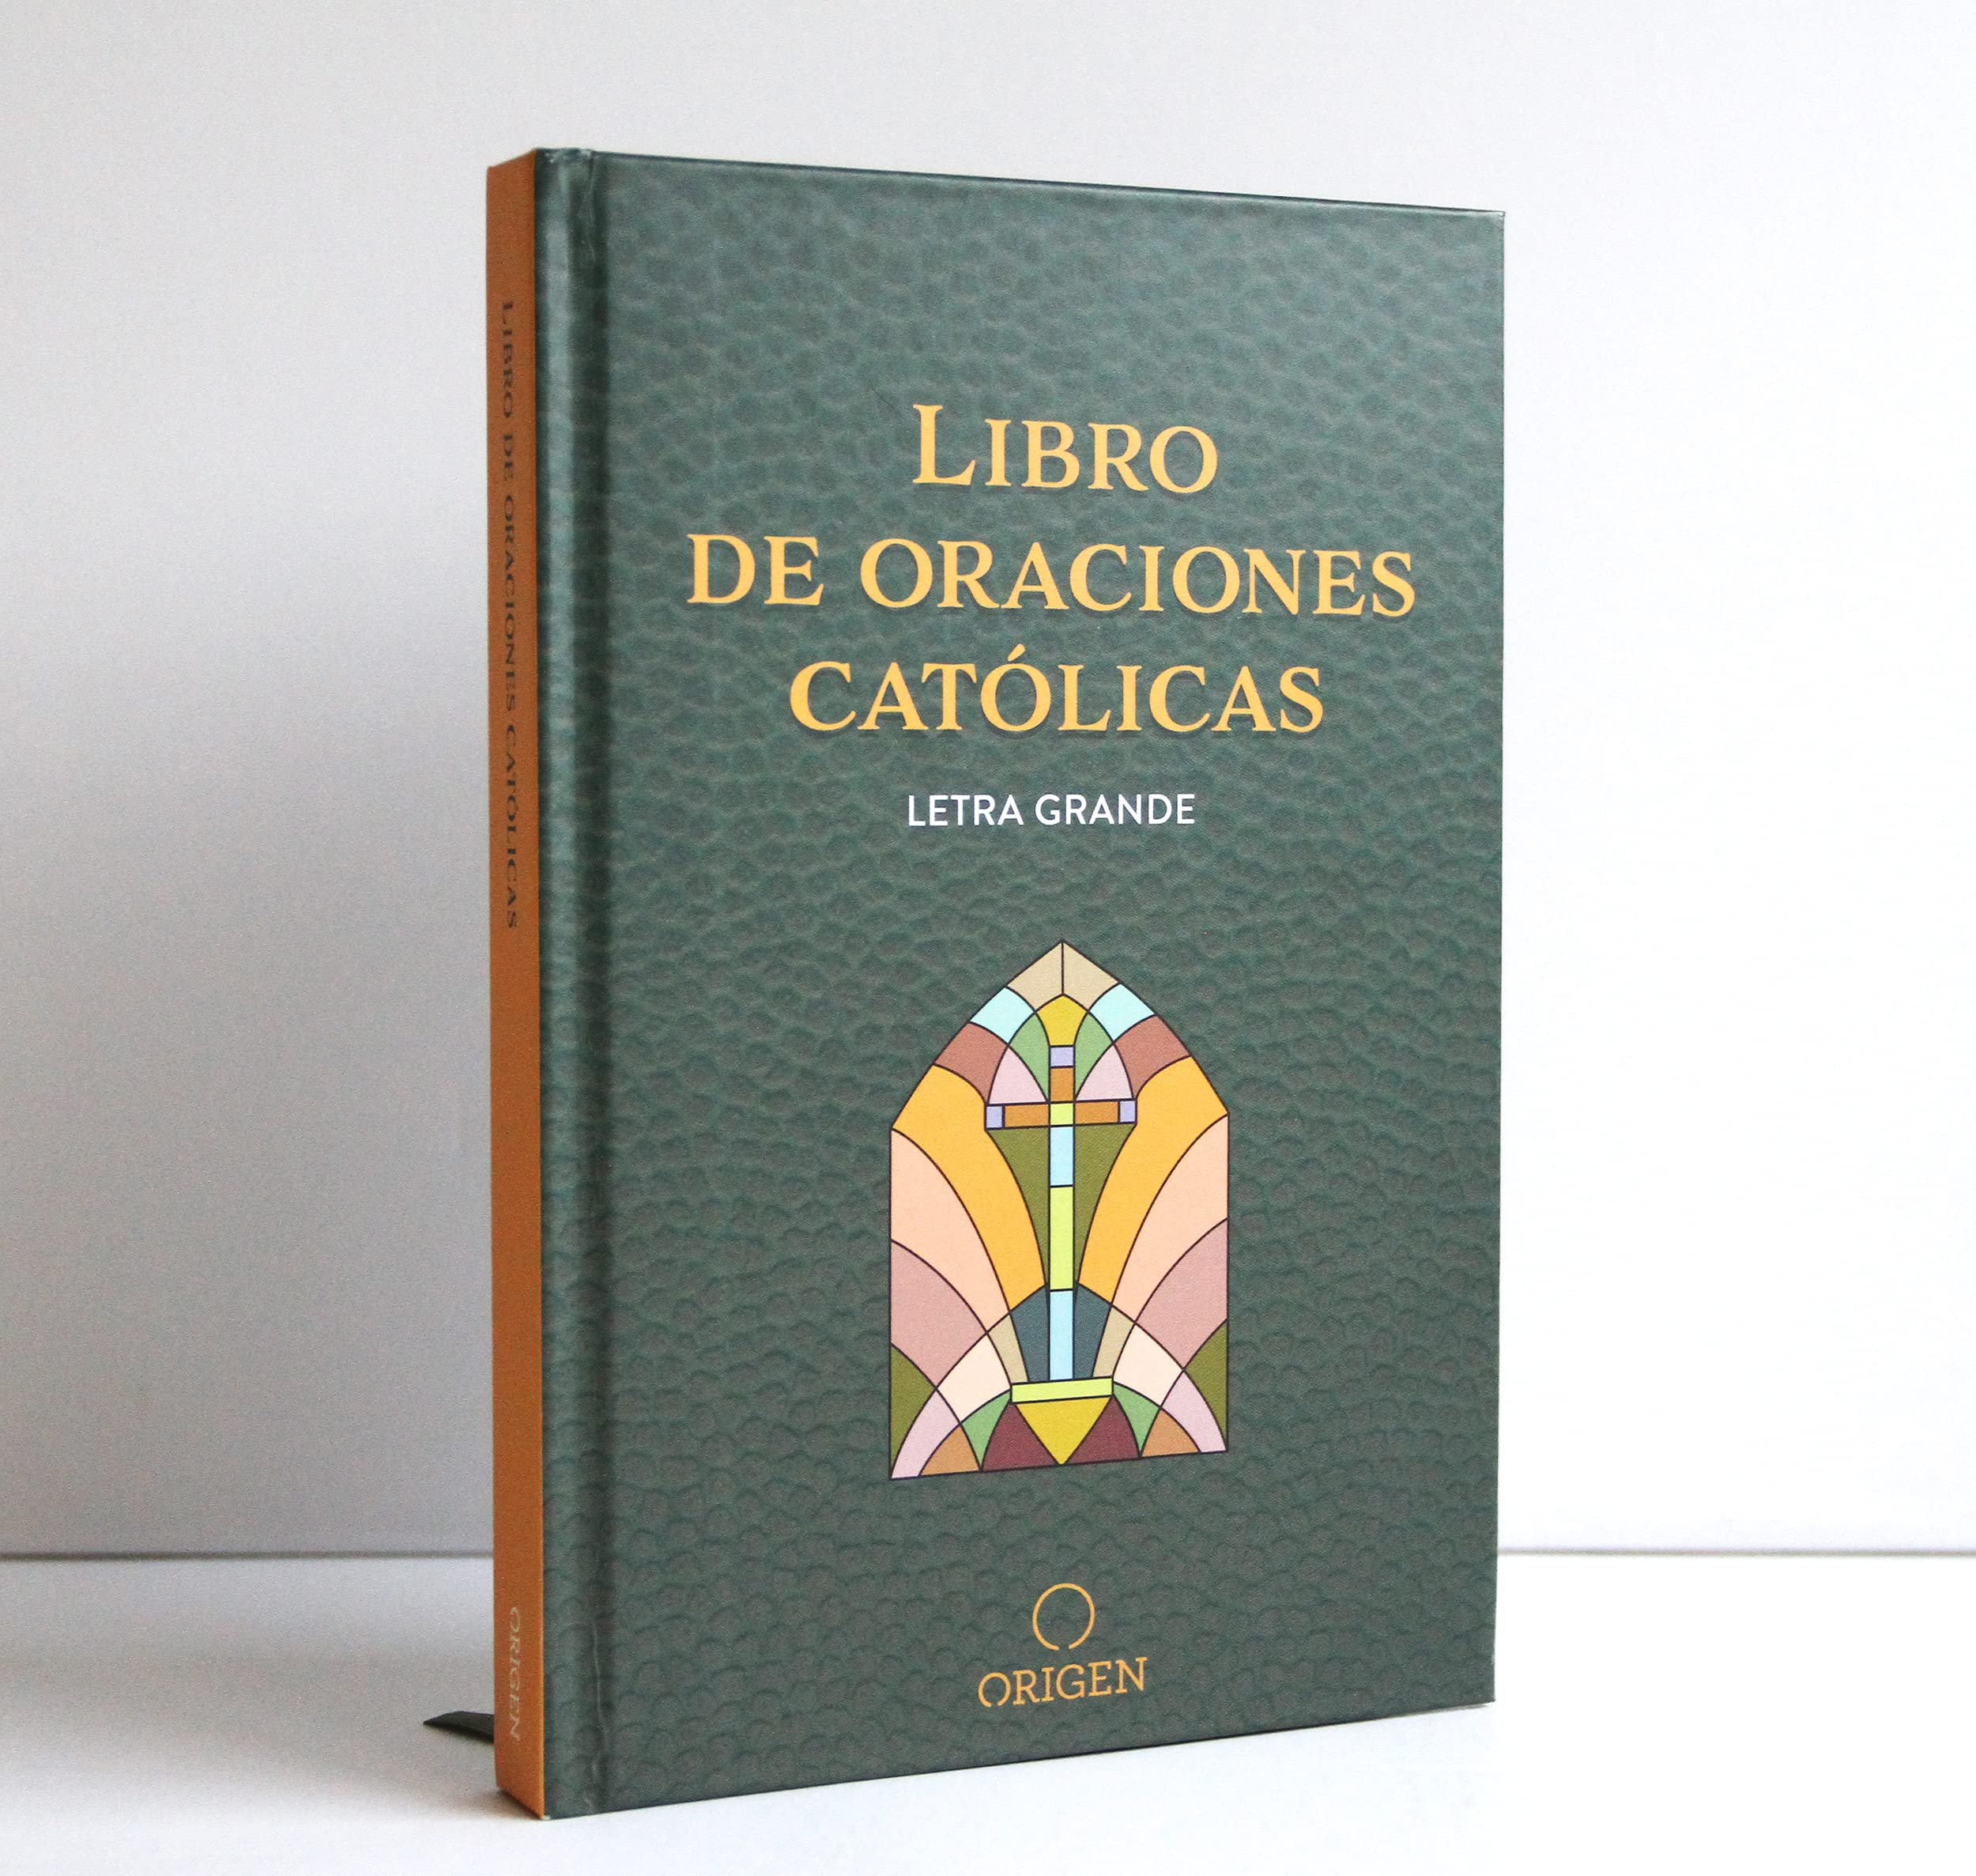 Libro de las oraciones católicas (letra grande) / Catholic Book of Prayers